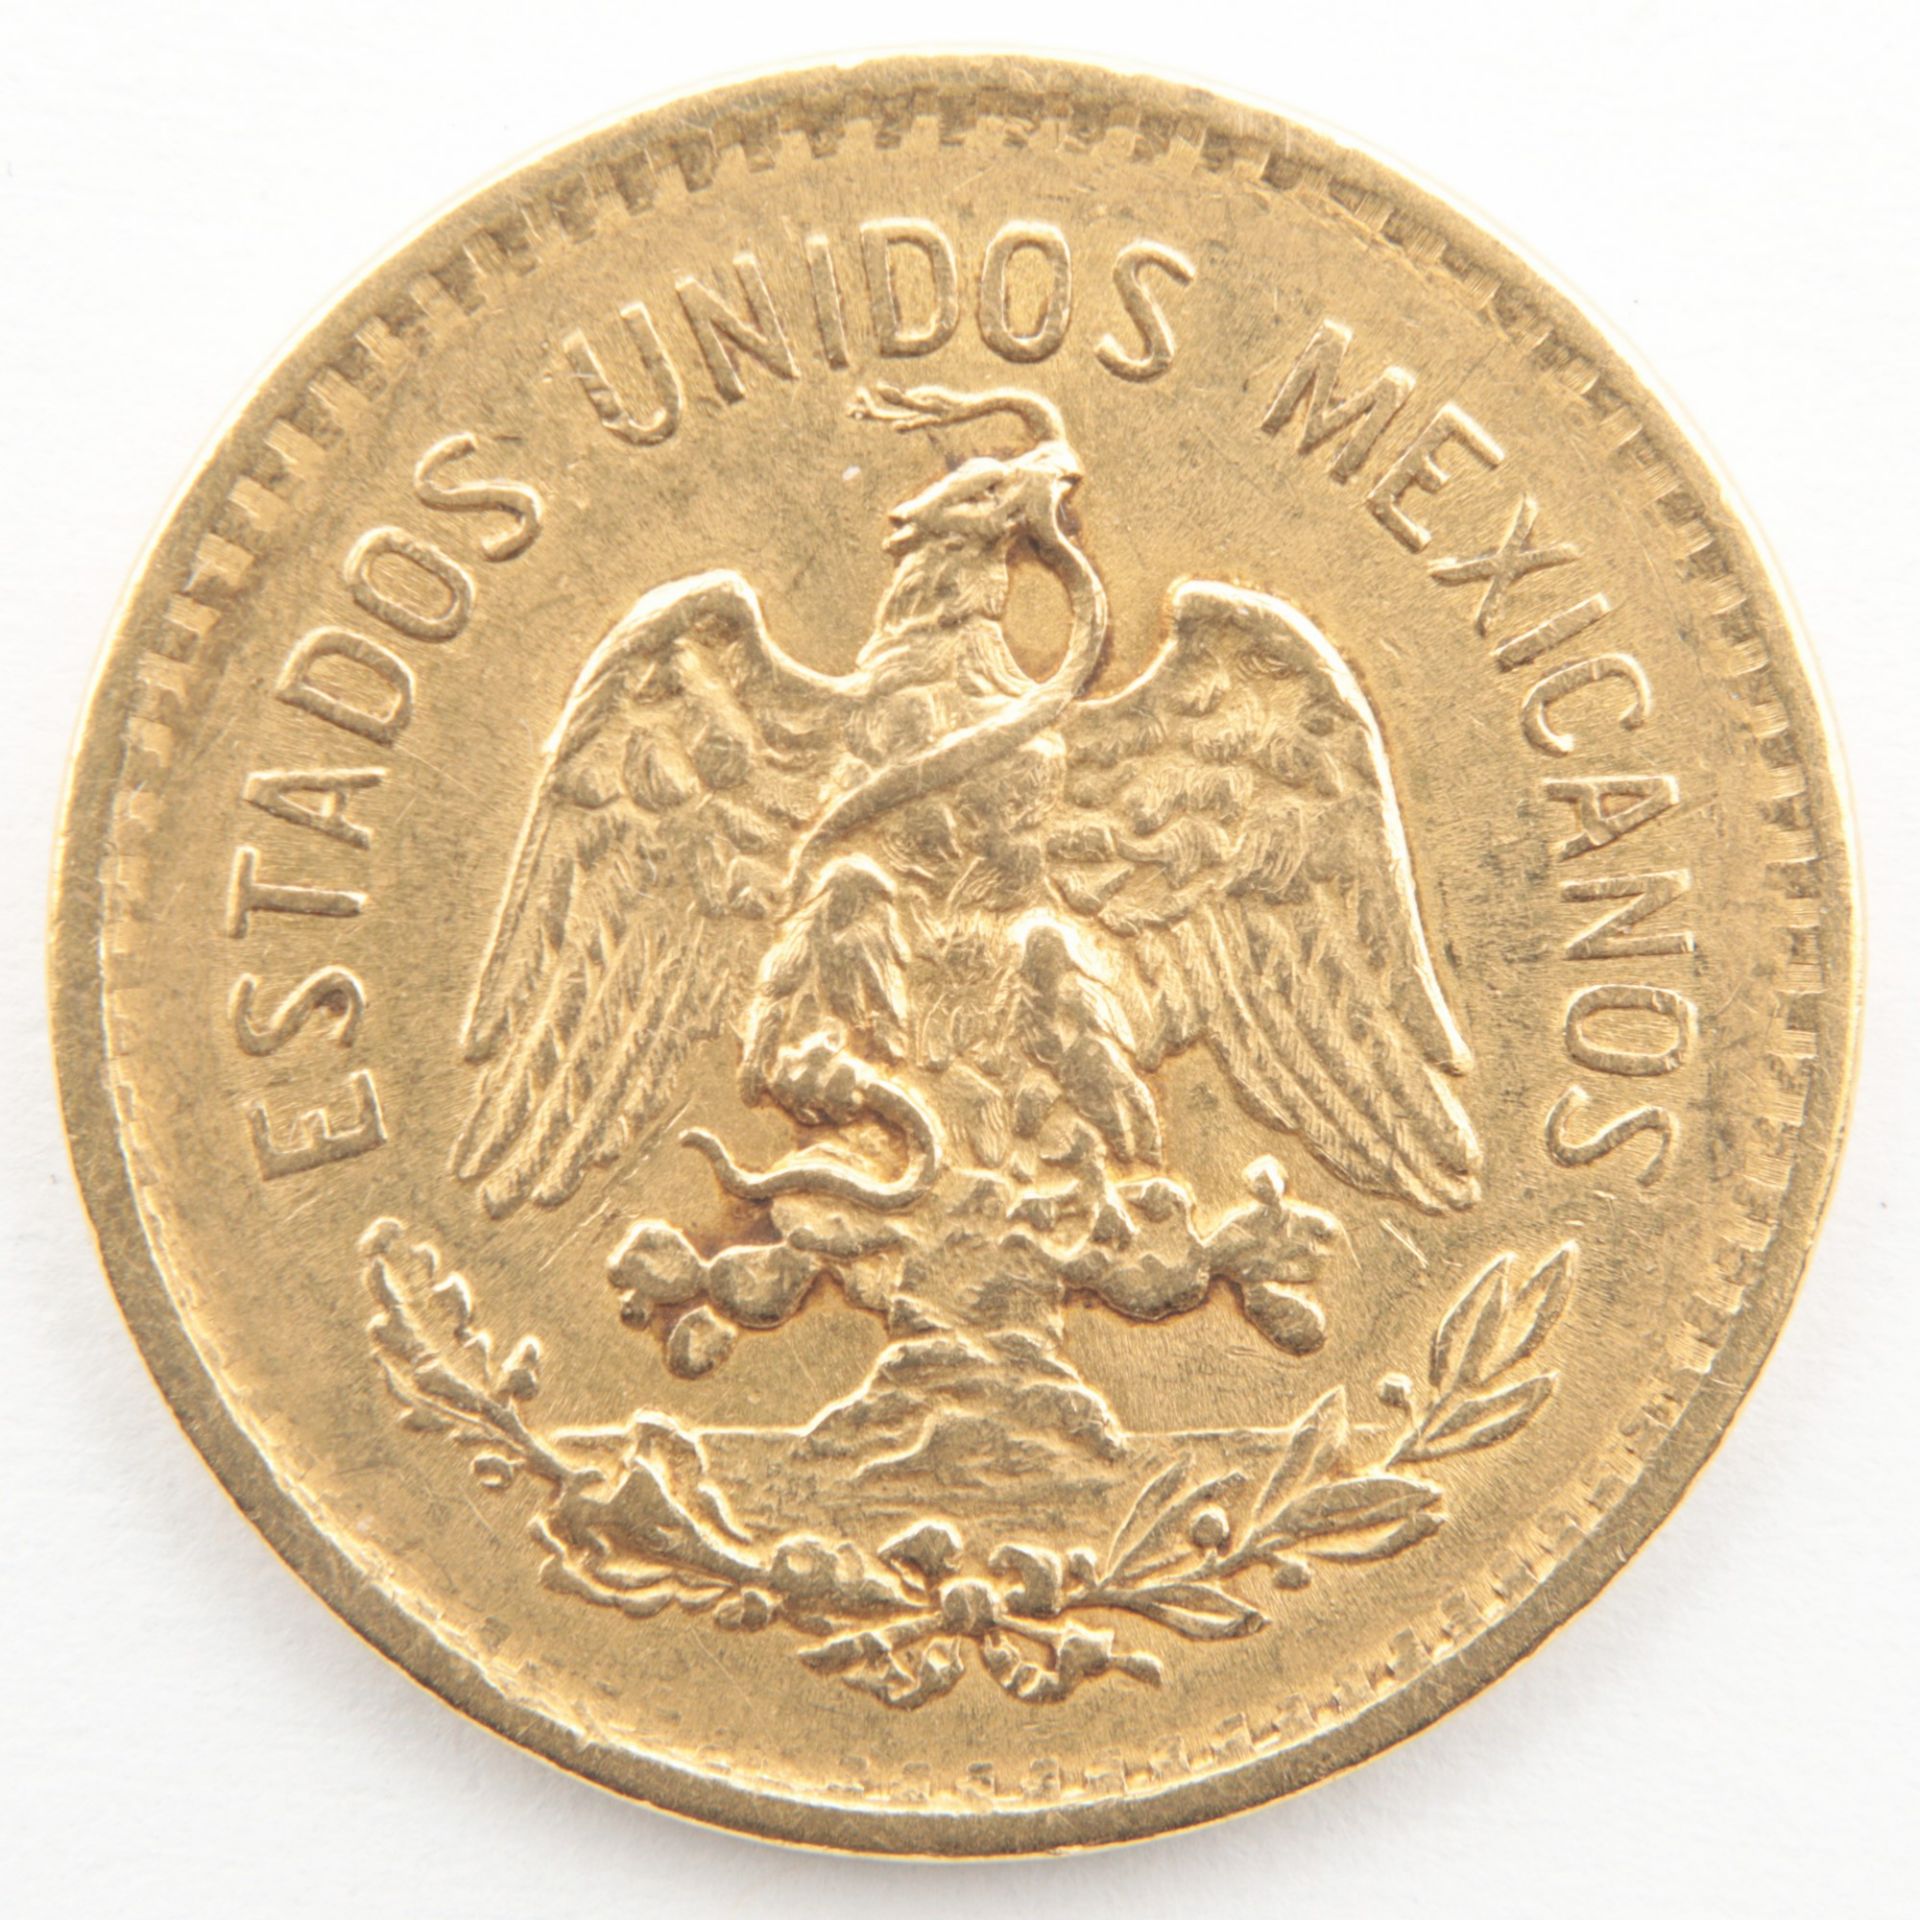 Goldmünze - Cinco Pesos 1906, Mexiko, Estados unidos Mexicanos/Vereinigten Mexikanischen Staaten ( - Bild 2 aus 2